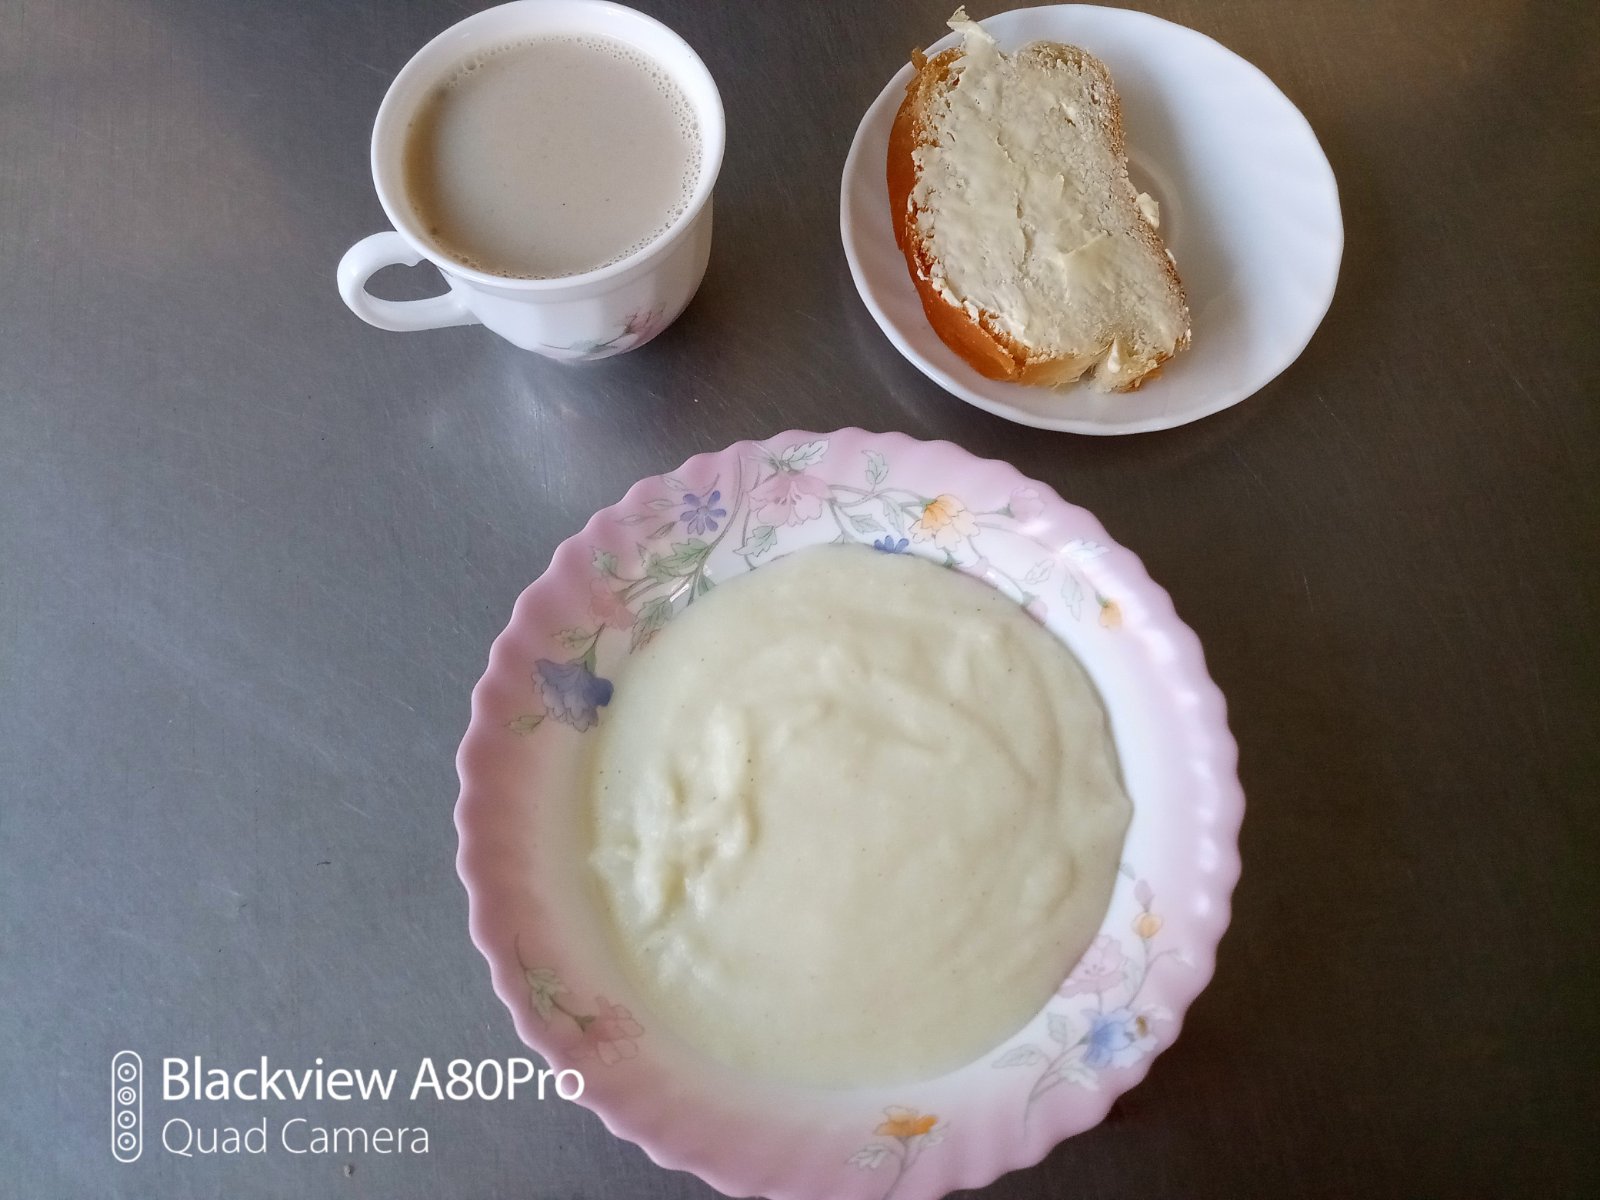 Завтрак день-1
Батон, масло
Каша молочная манная
Чай с сахаром, лимоном
Кофейный напиток